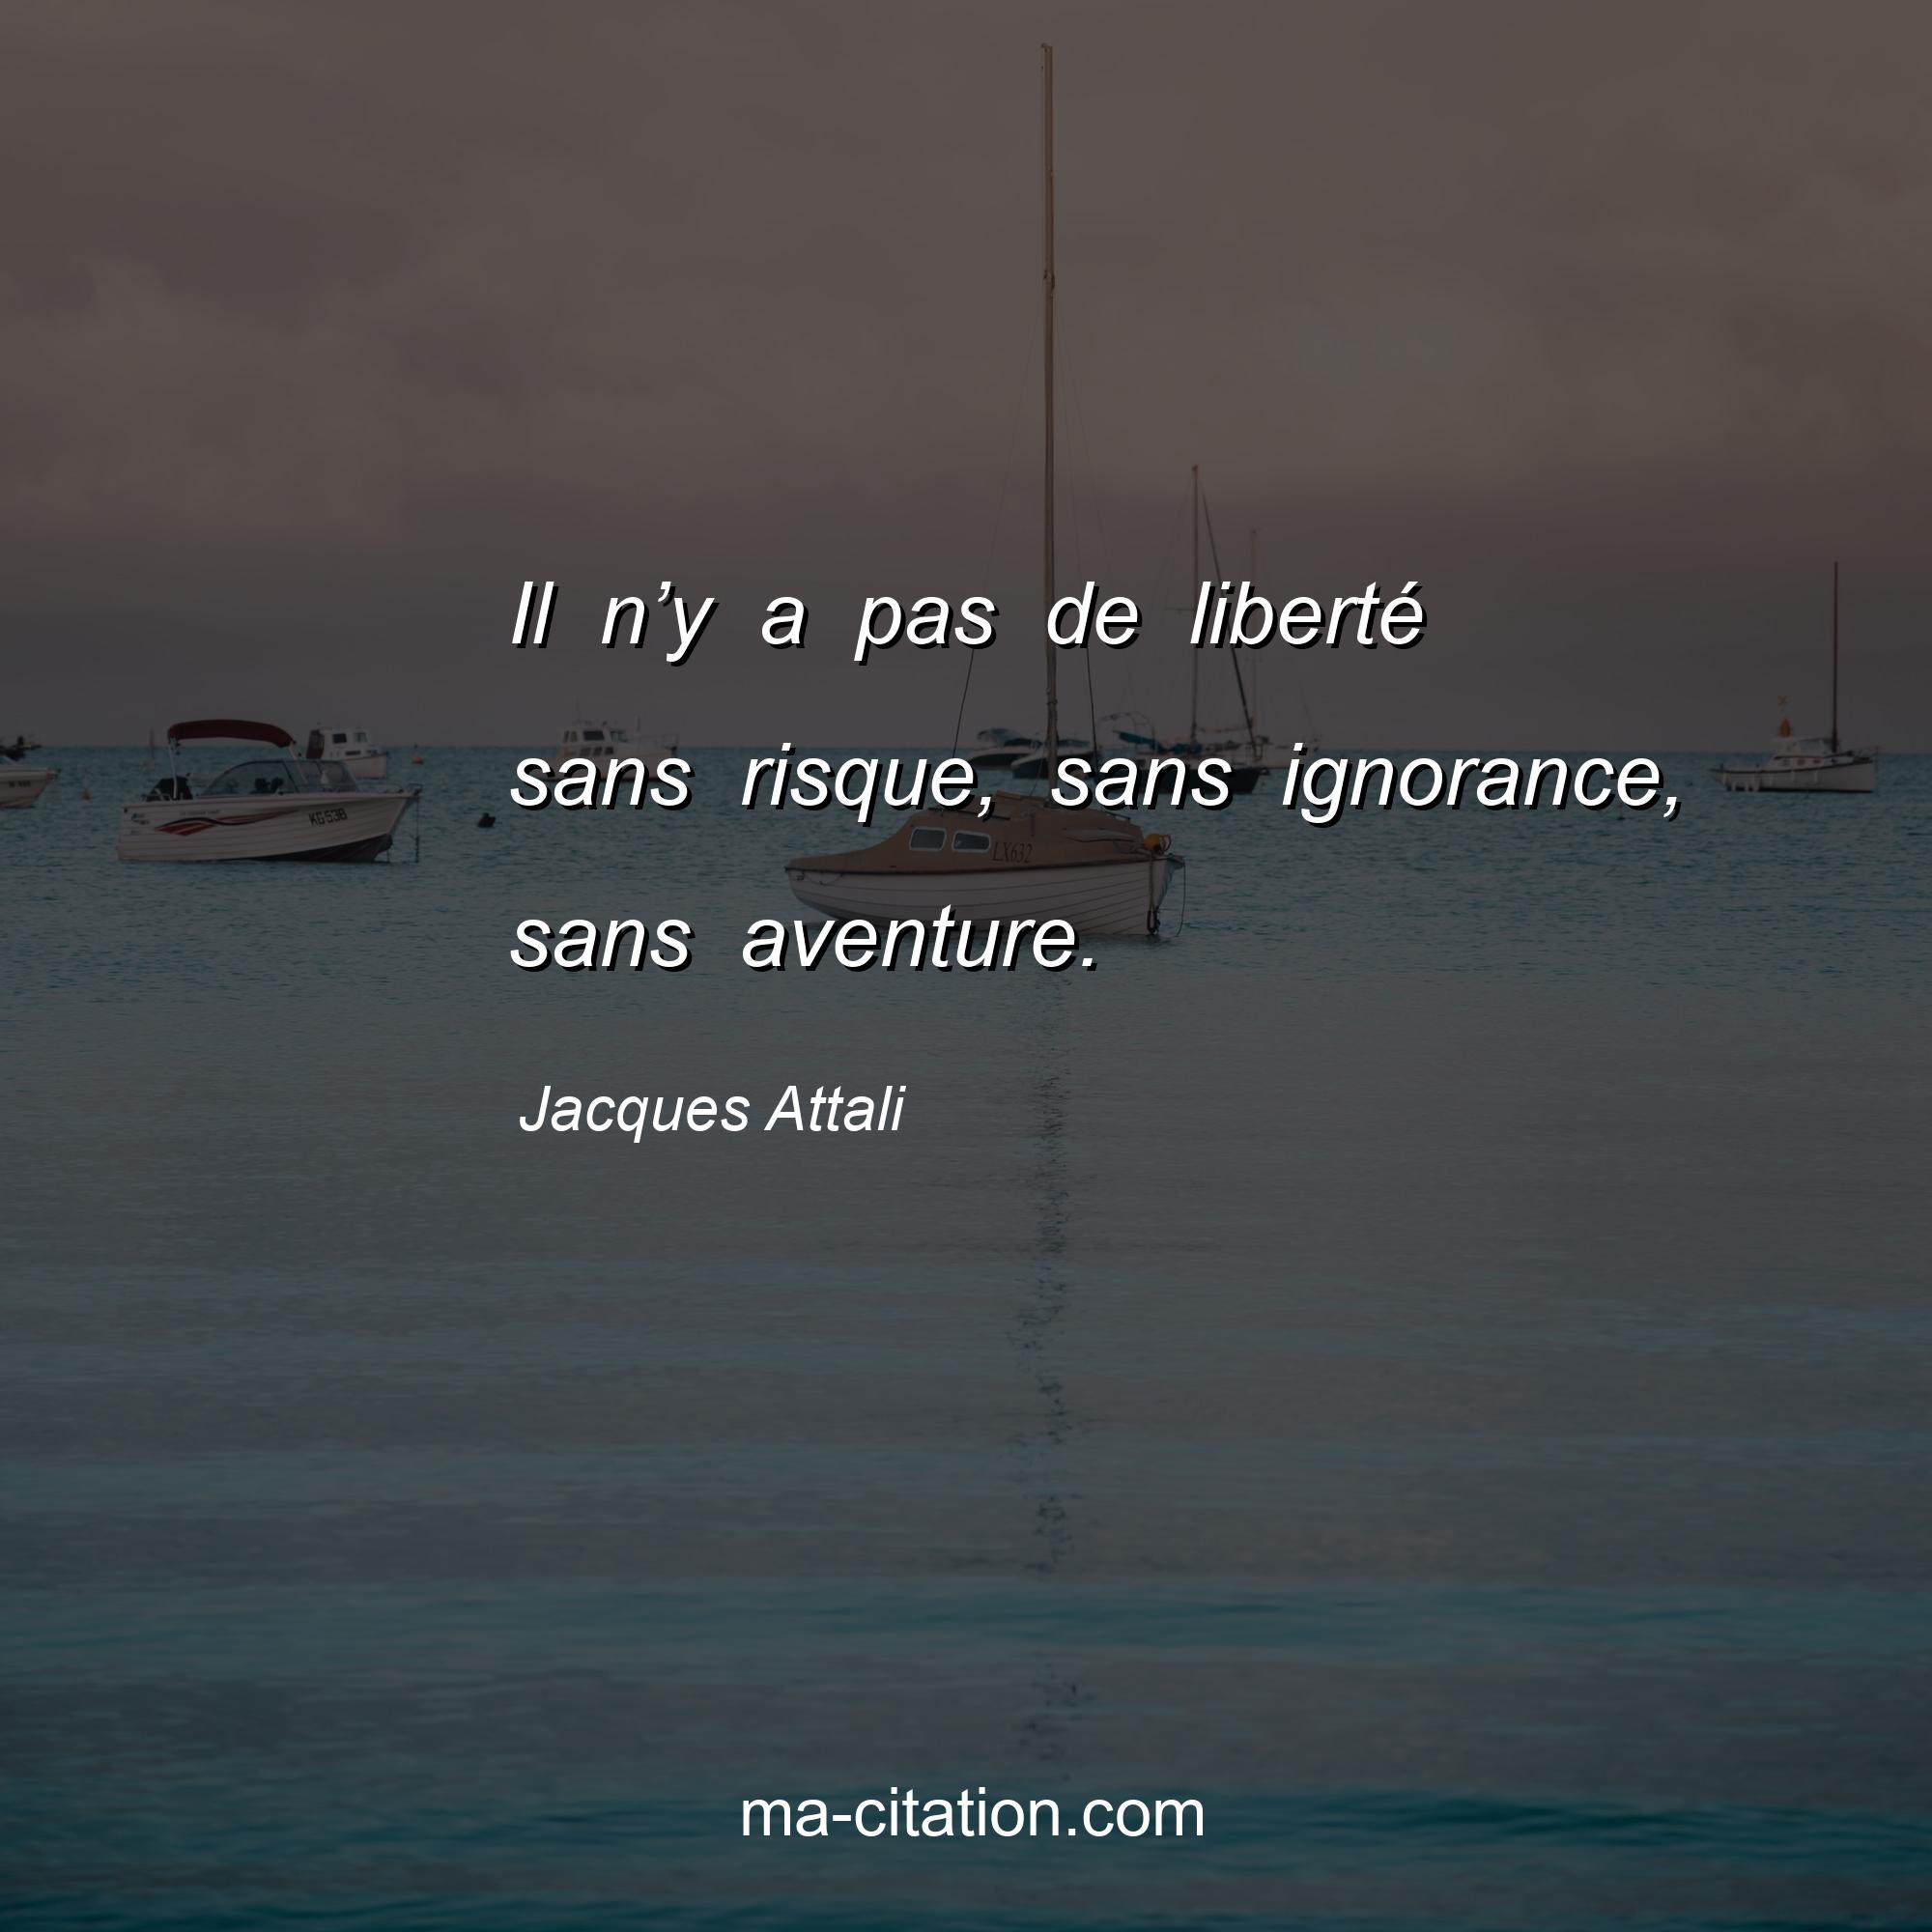 Jacques Attali : Il n’y a pas de liberté sans risque, sans ignorance, sans aventure.